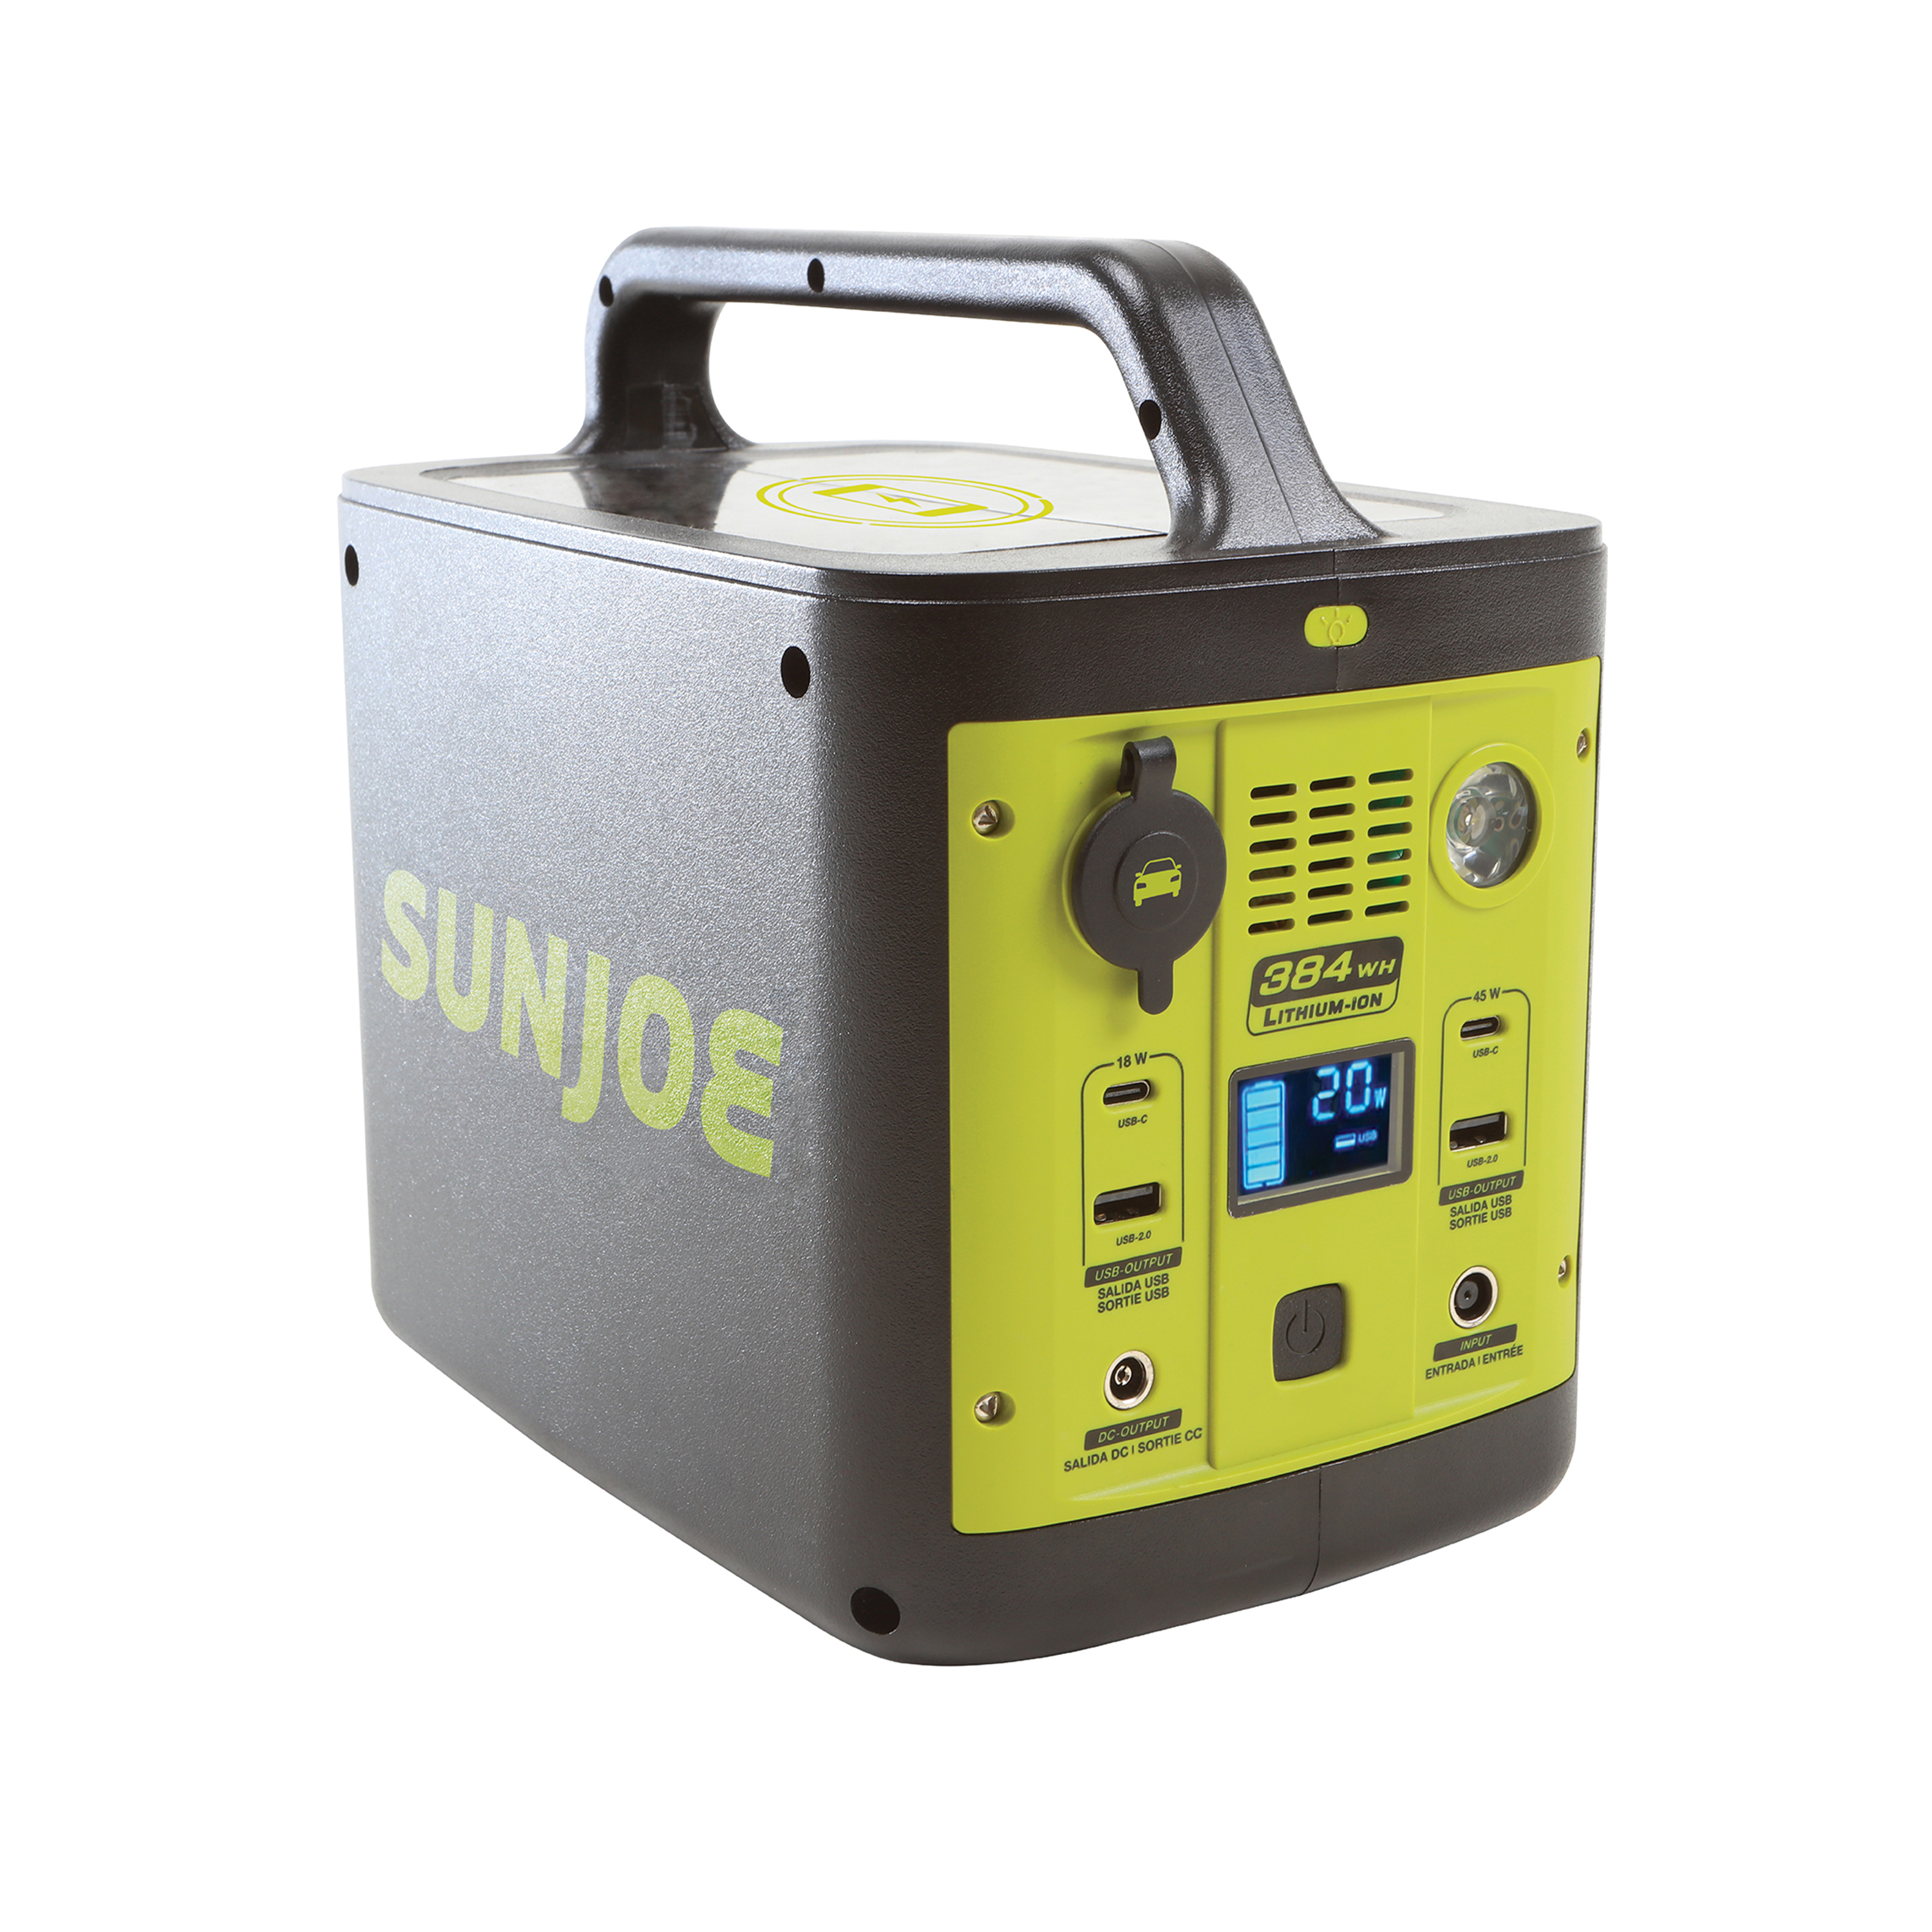 How To Use Sun Joe Generator